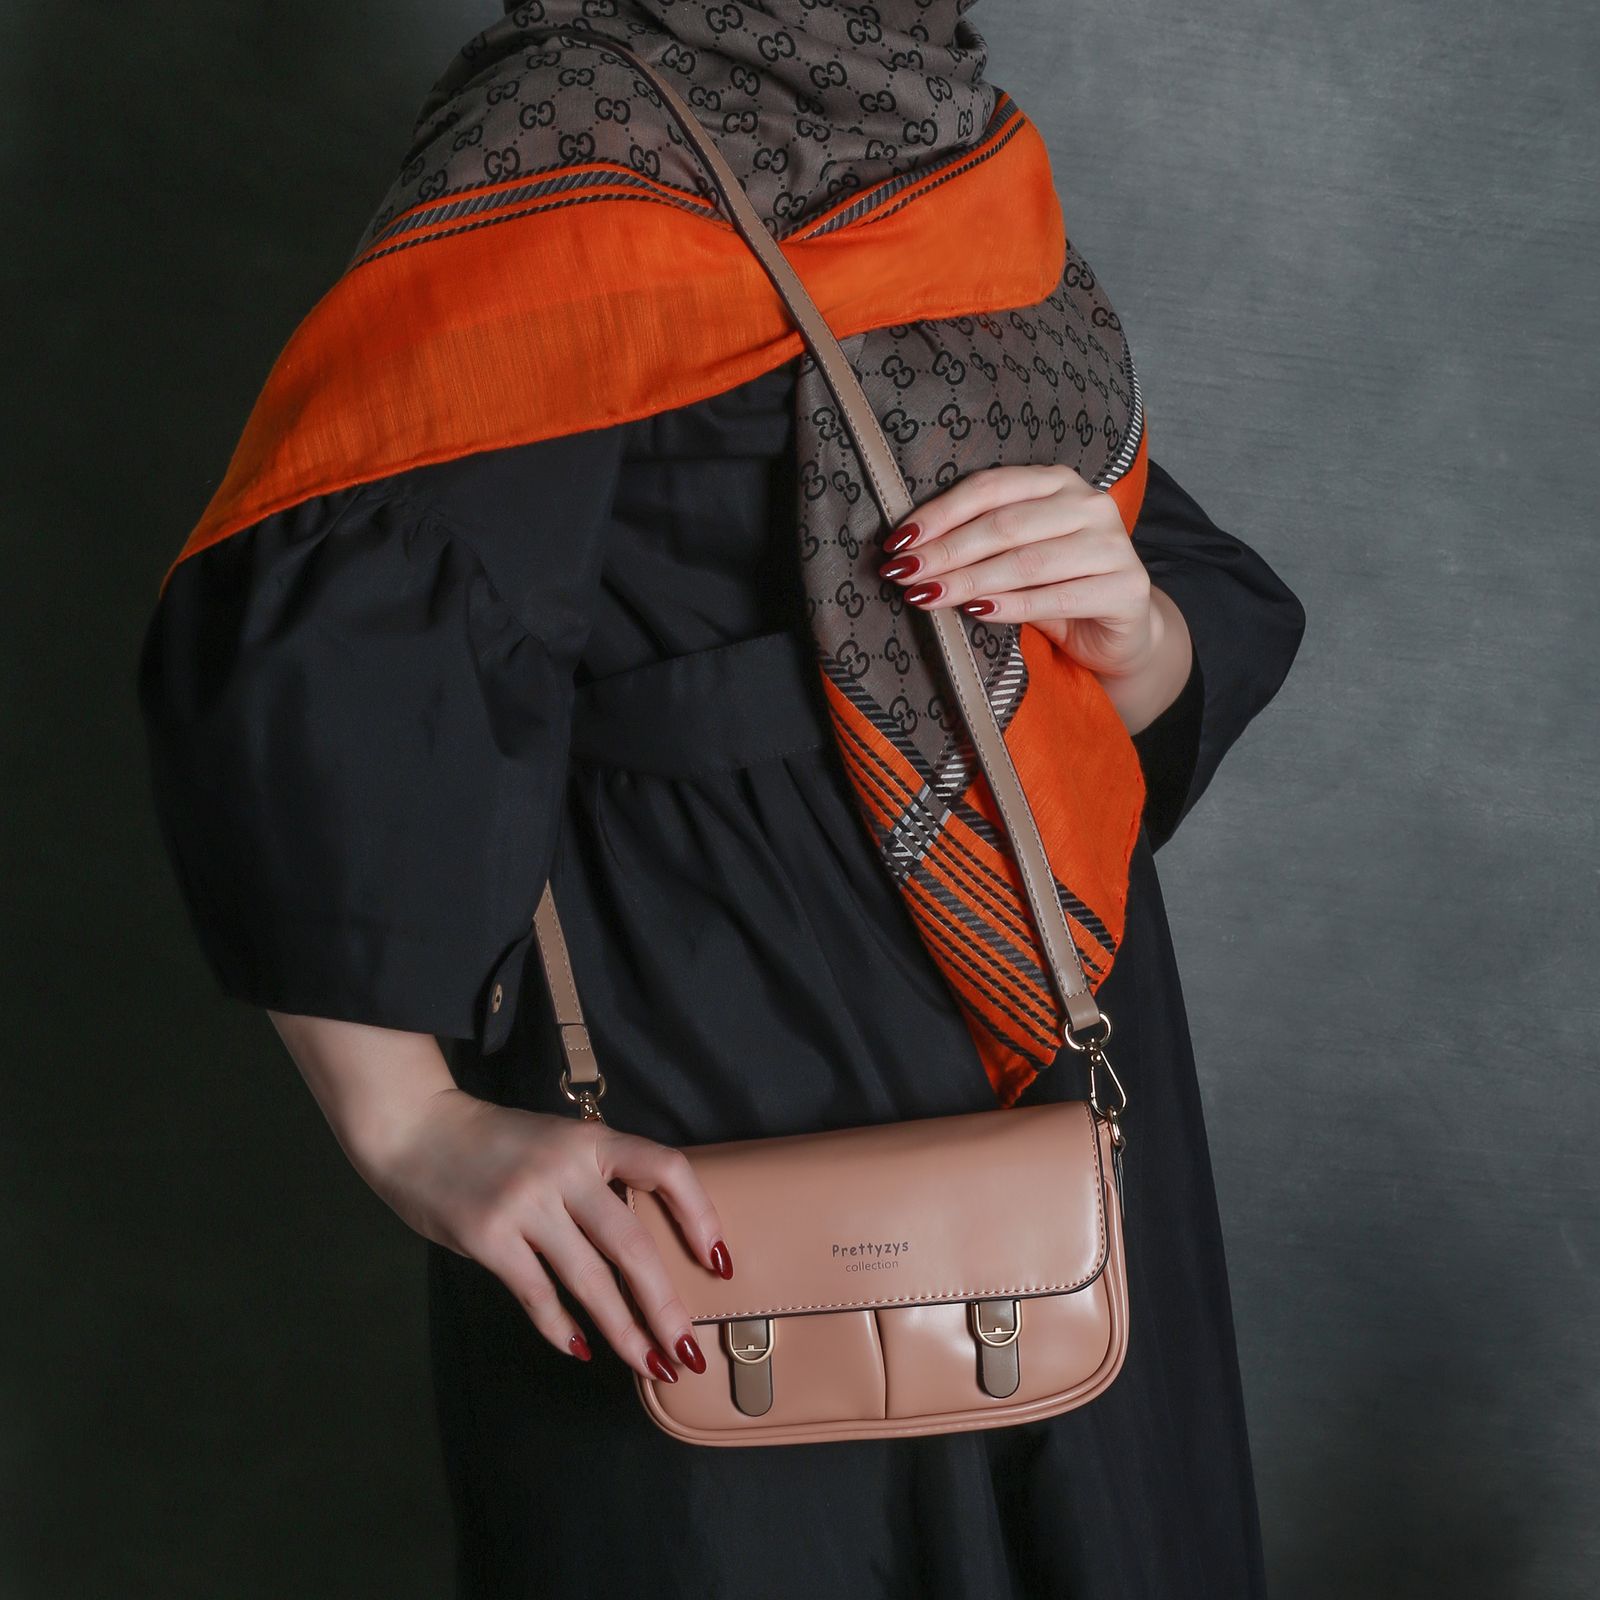 کیف رودوشی زنانه پرتیزس مدل ورنی کد 2010018 -  - 8